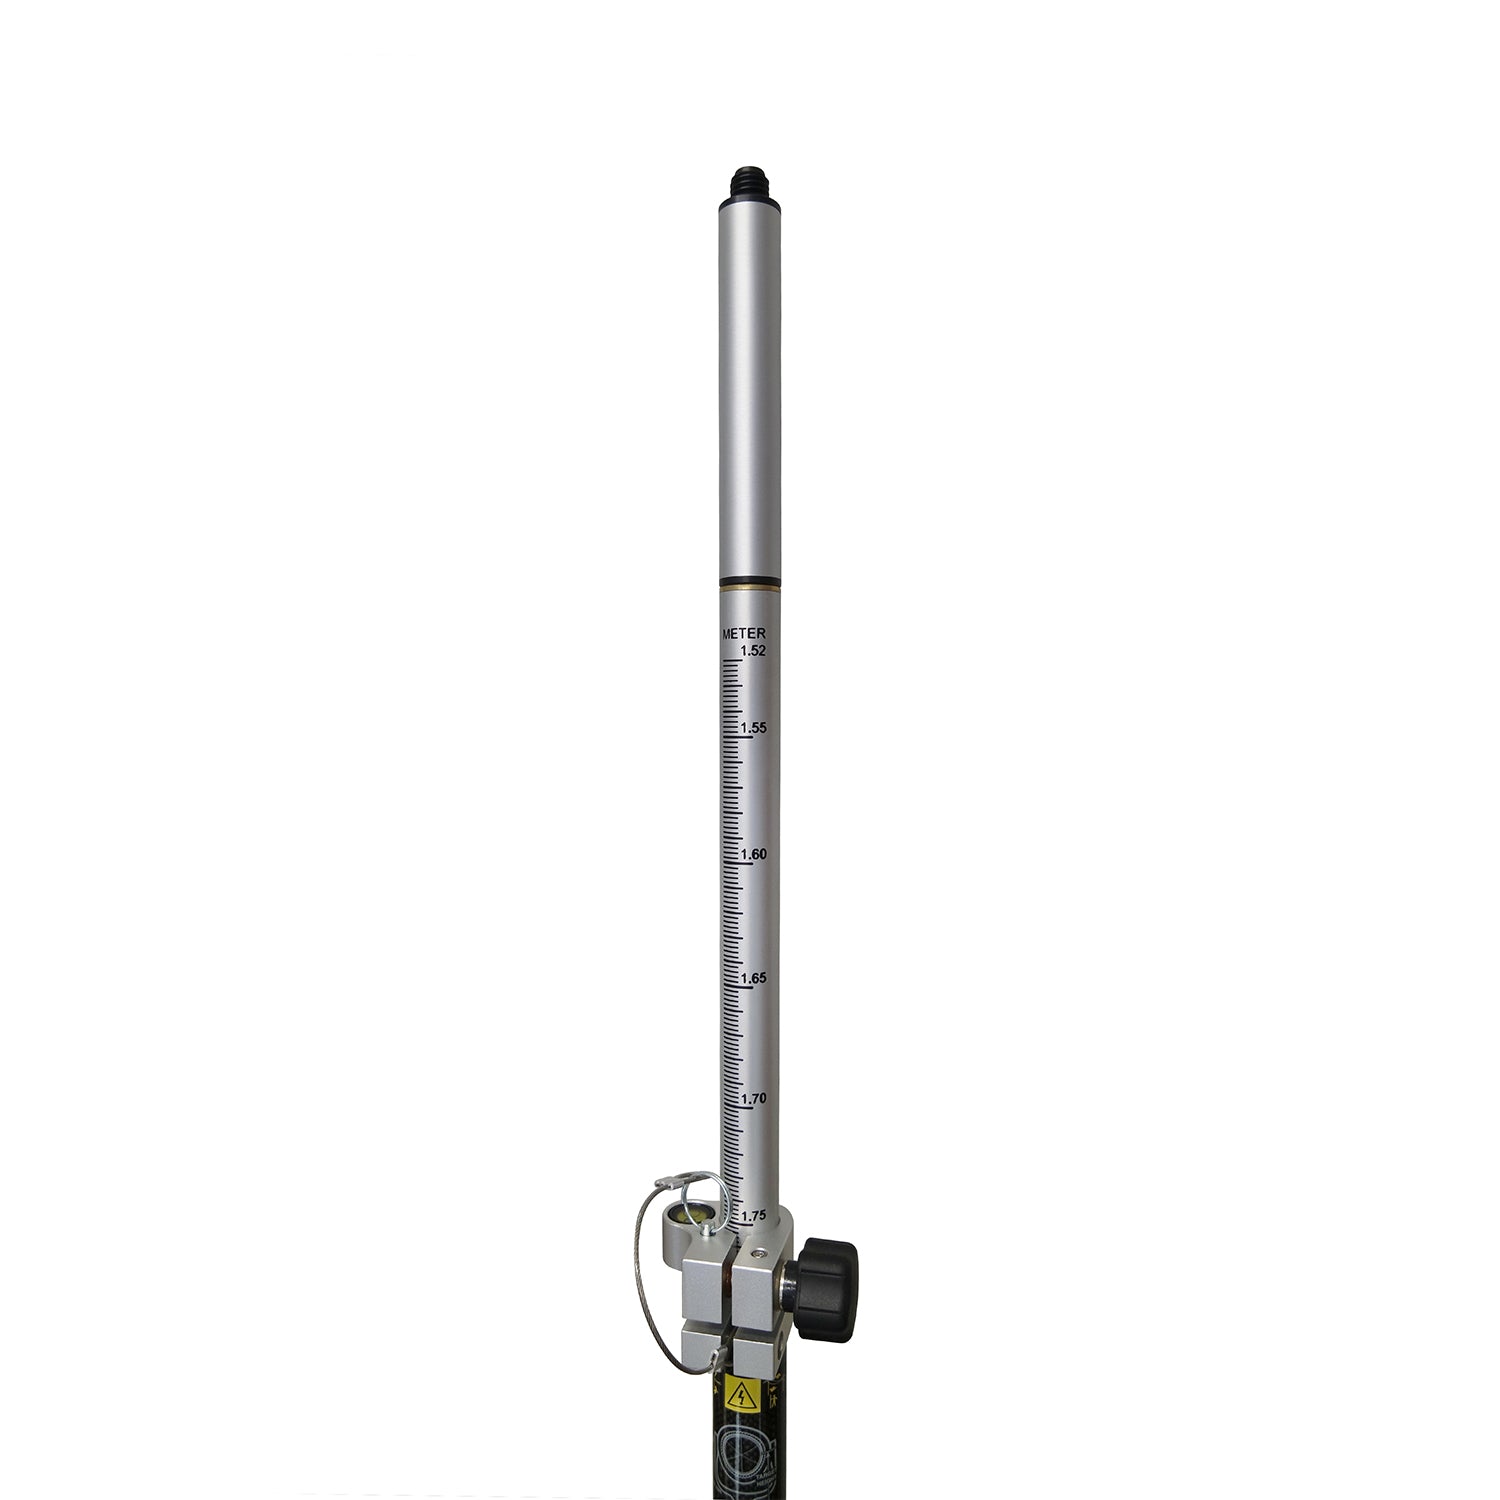 SitePro 2.6M Carbon Fiber Ultimate Topo Prism Pole -Rods, Poles & Accessories- eGPS Solutions Inc.